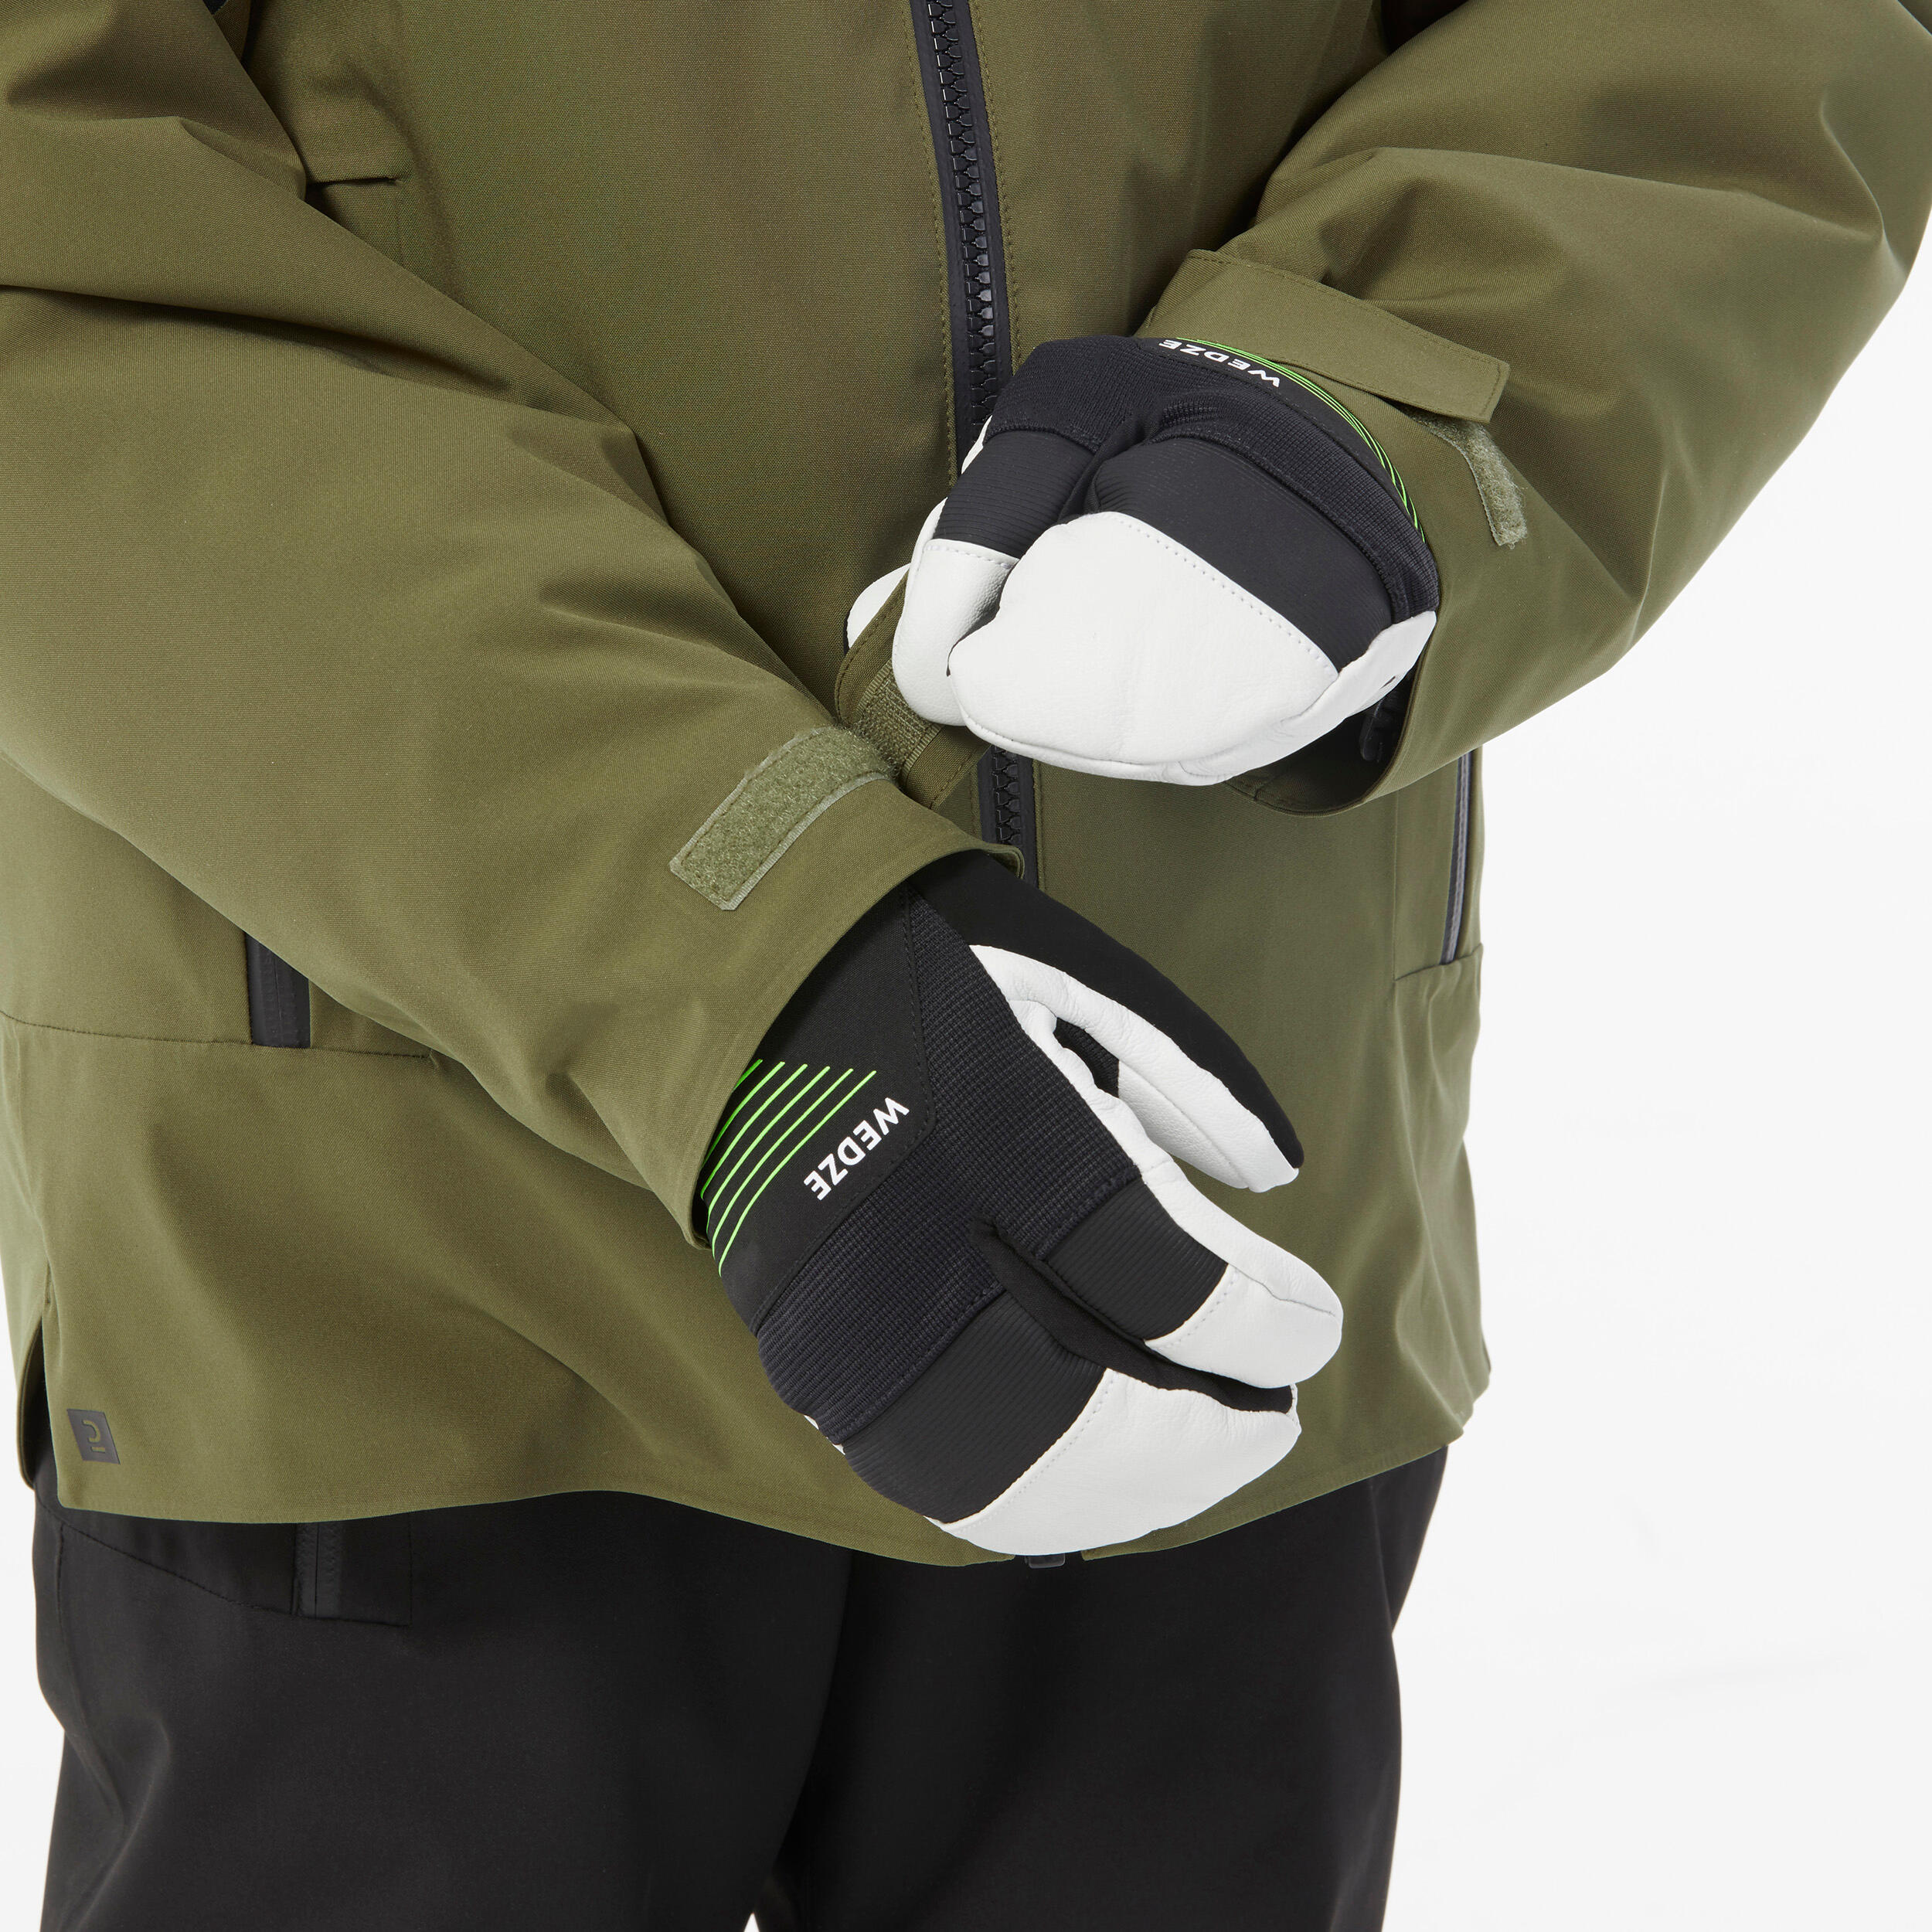 Kids’ warm and waterproof ski jacket 900 - Khaki 11/13